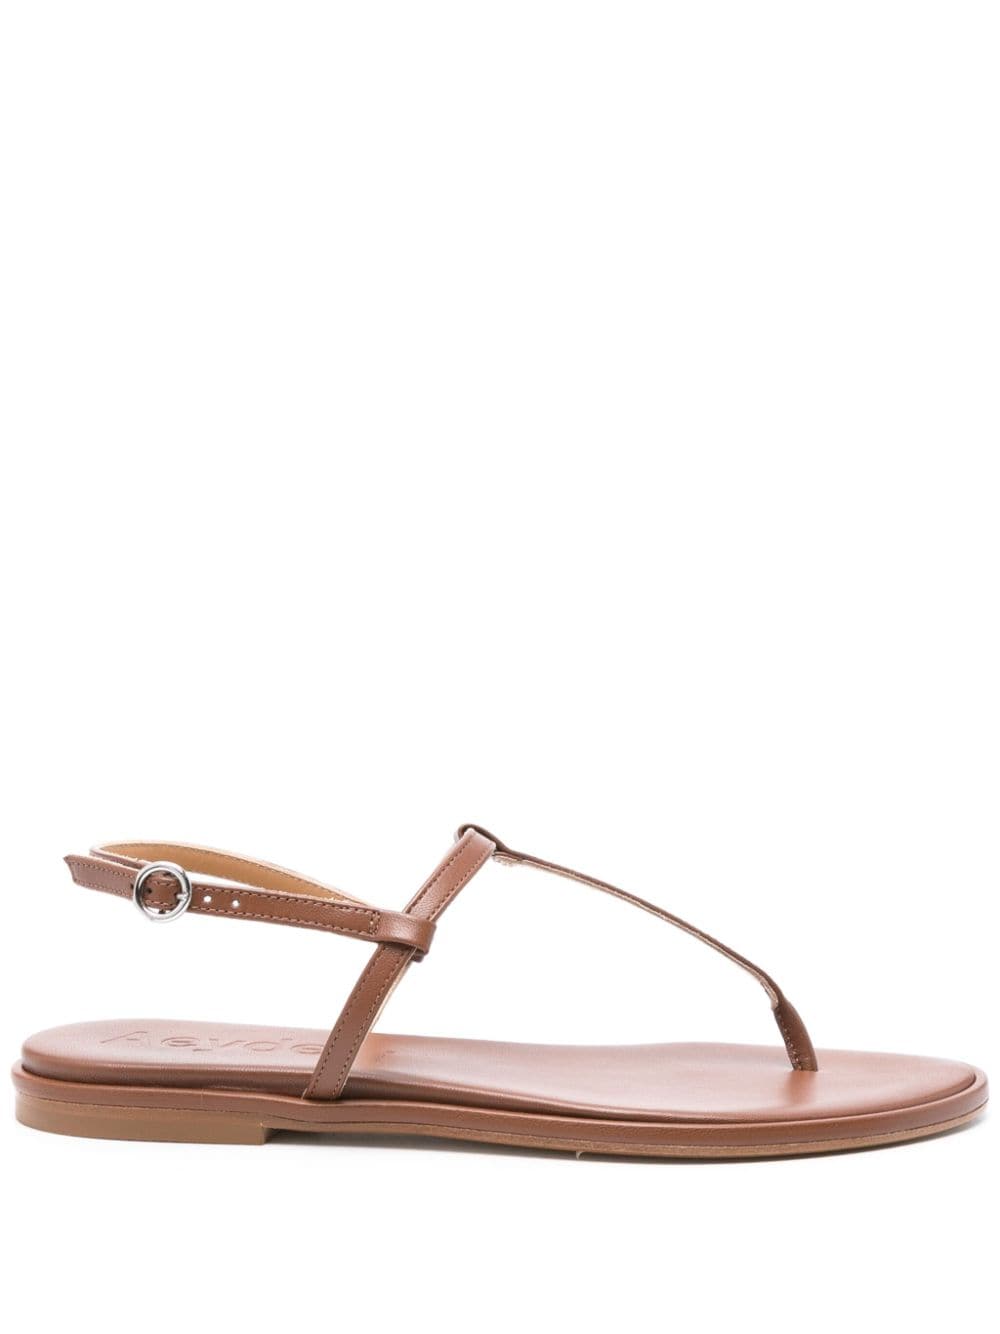 Aeyde Nala leather sandals - Brown von Aeyde